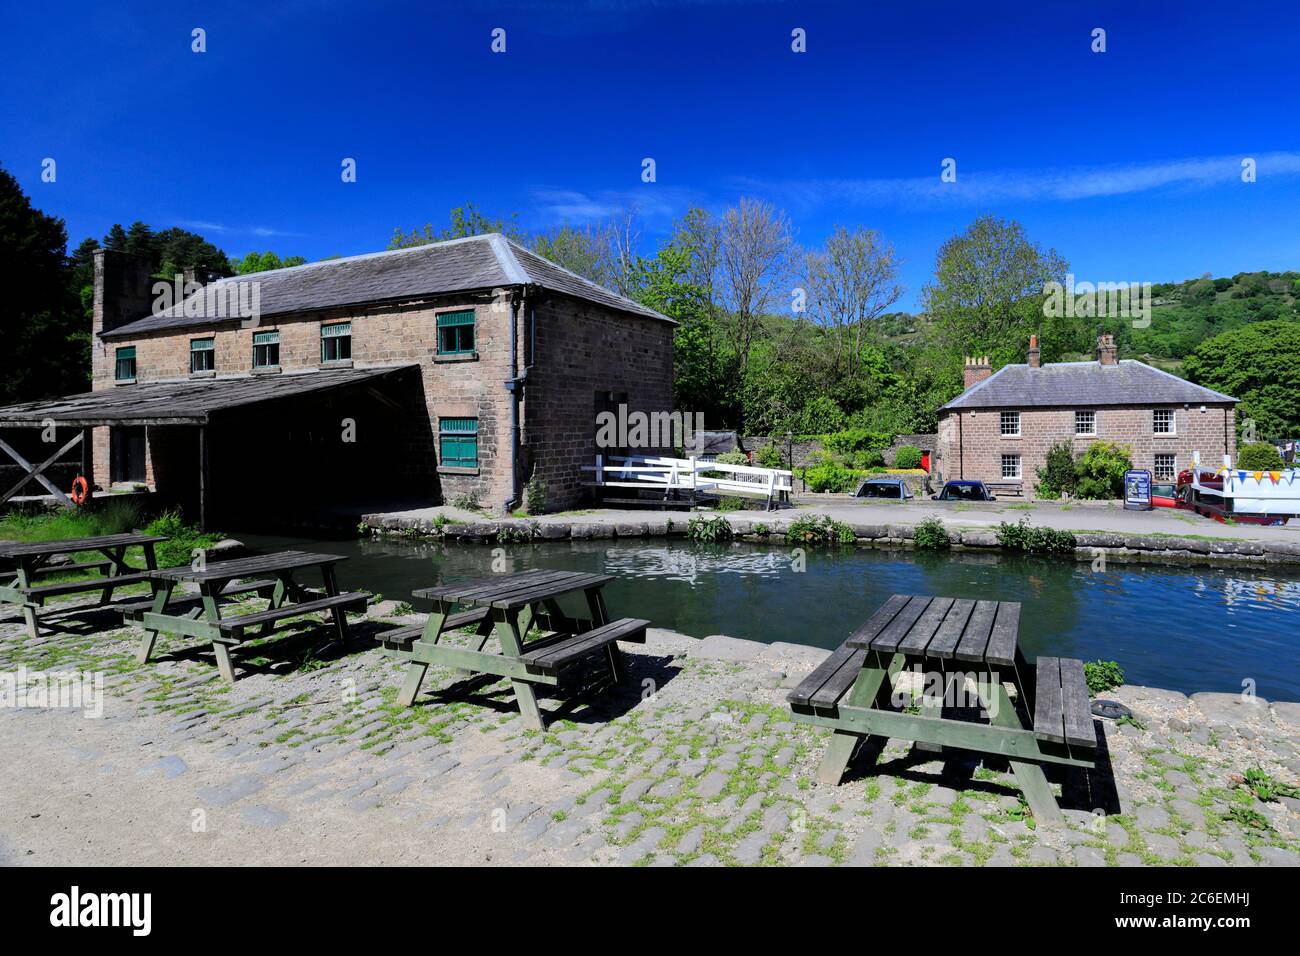 Besucherzentrum Cromford Canal, Dorf Cromford, Peak District National Park, Derbyshire Dales, England, Großbritannien Stockfoto